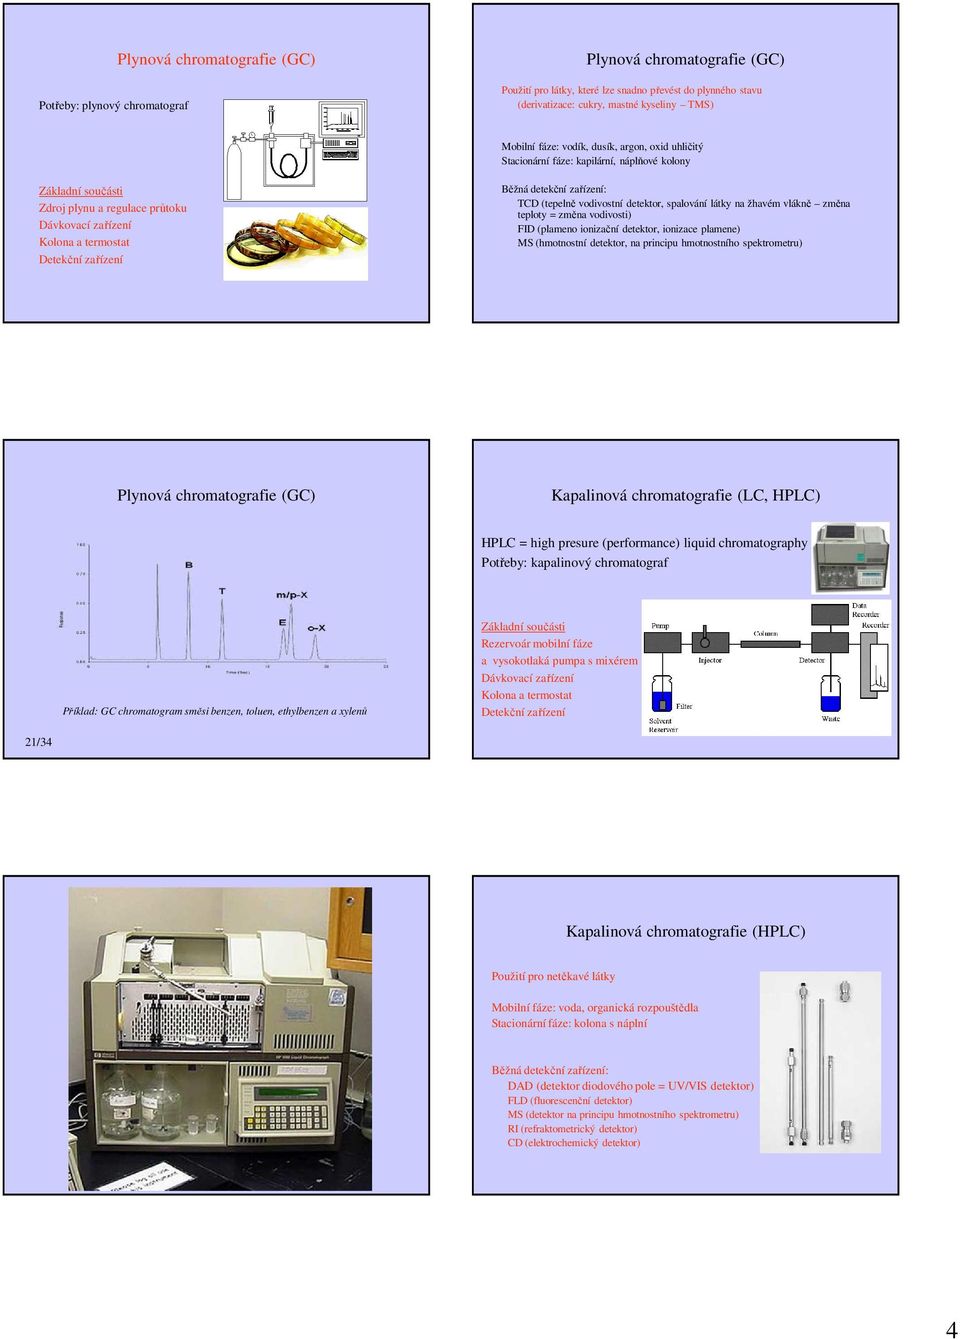 detekční zařízení: TCD (tepelně vodivostní detektor, spalování látky na žhavém vlákně změna teploty = změna vodivosti) FID (plameno ionizační detektor, ionizace plamene) MS (hmotnostní detektor, na